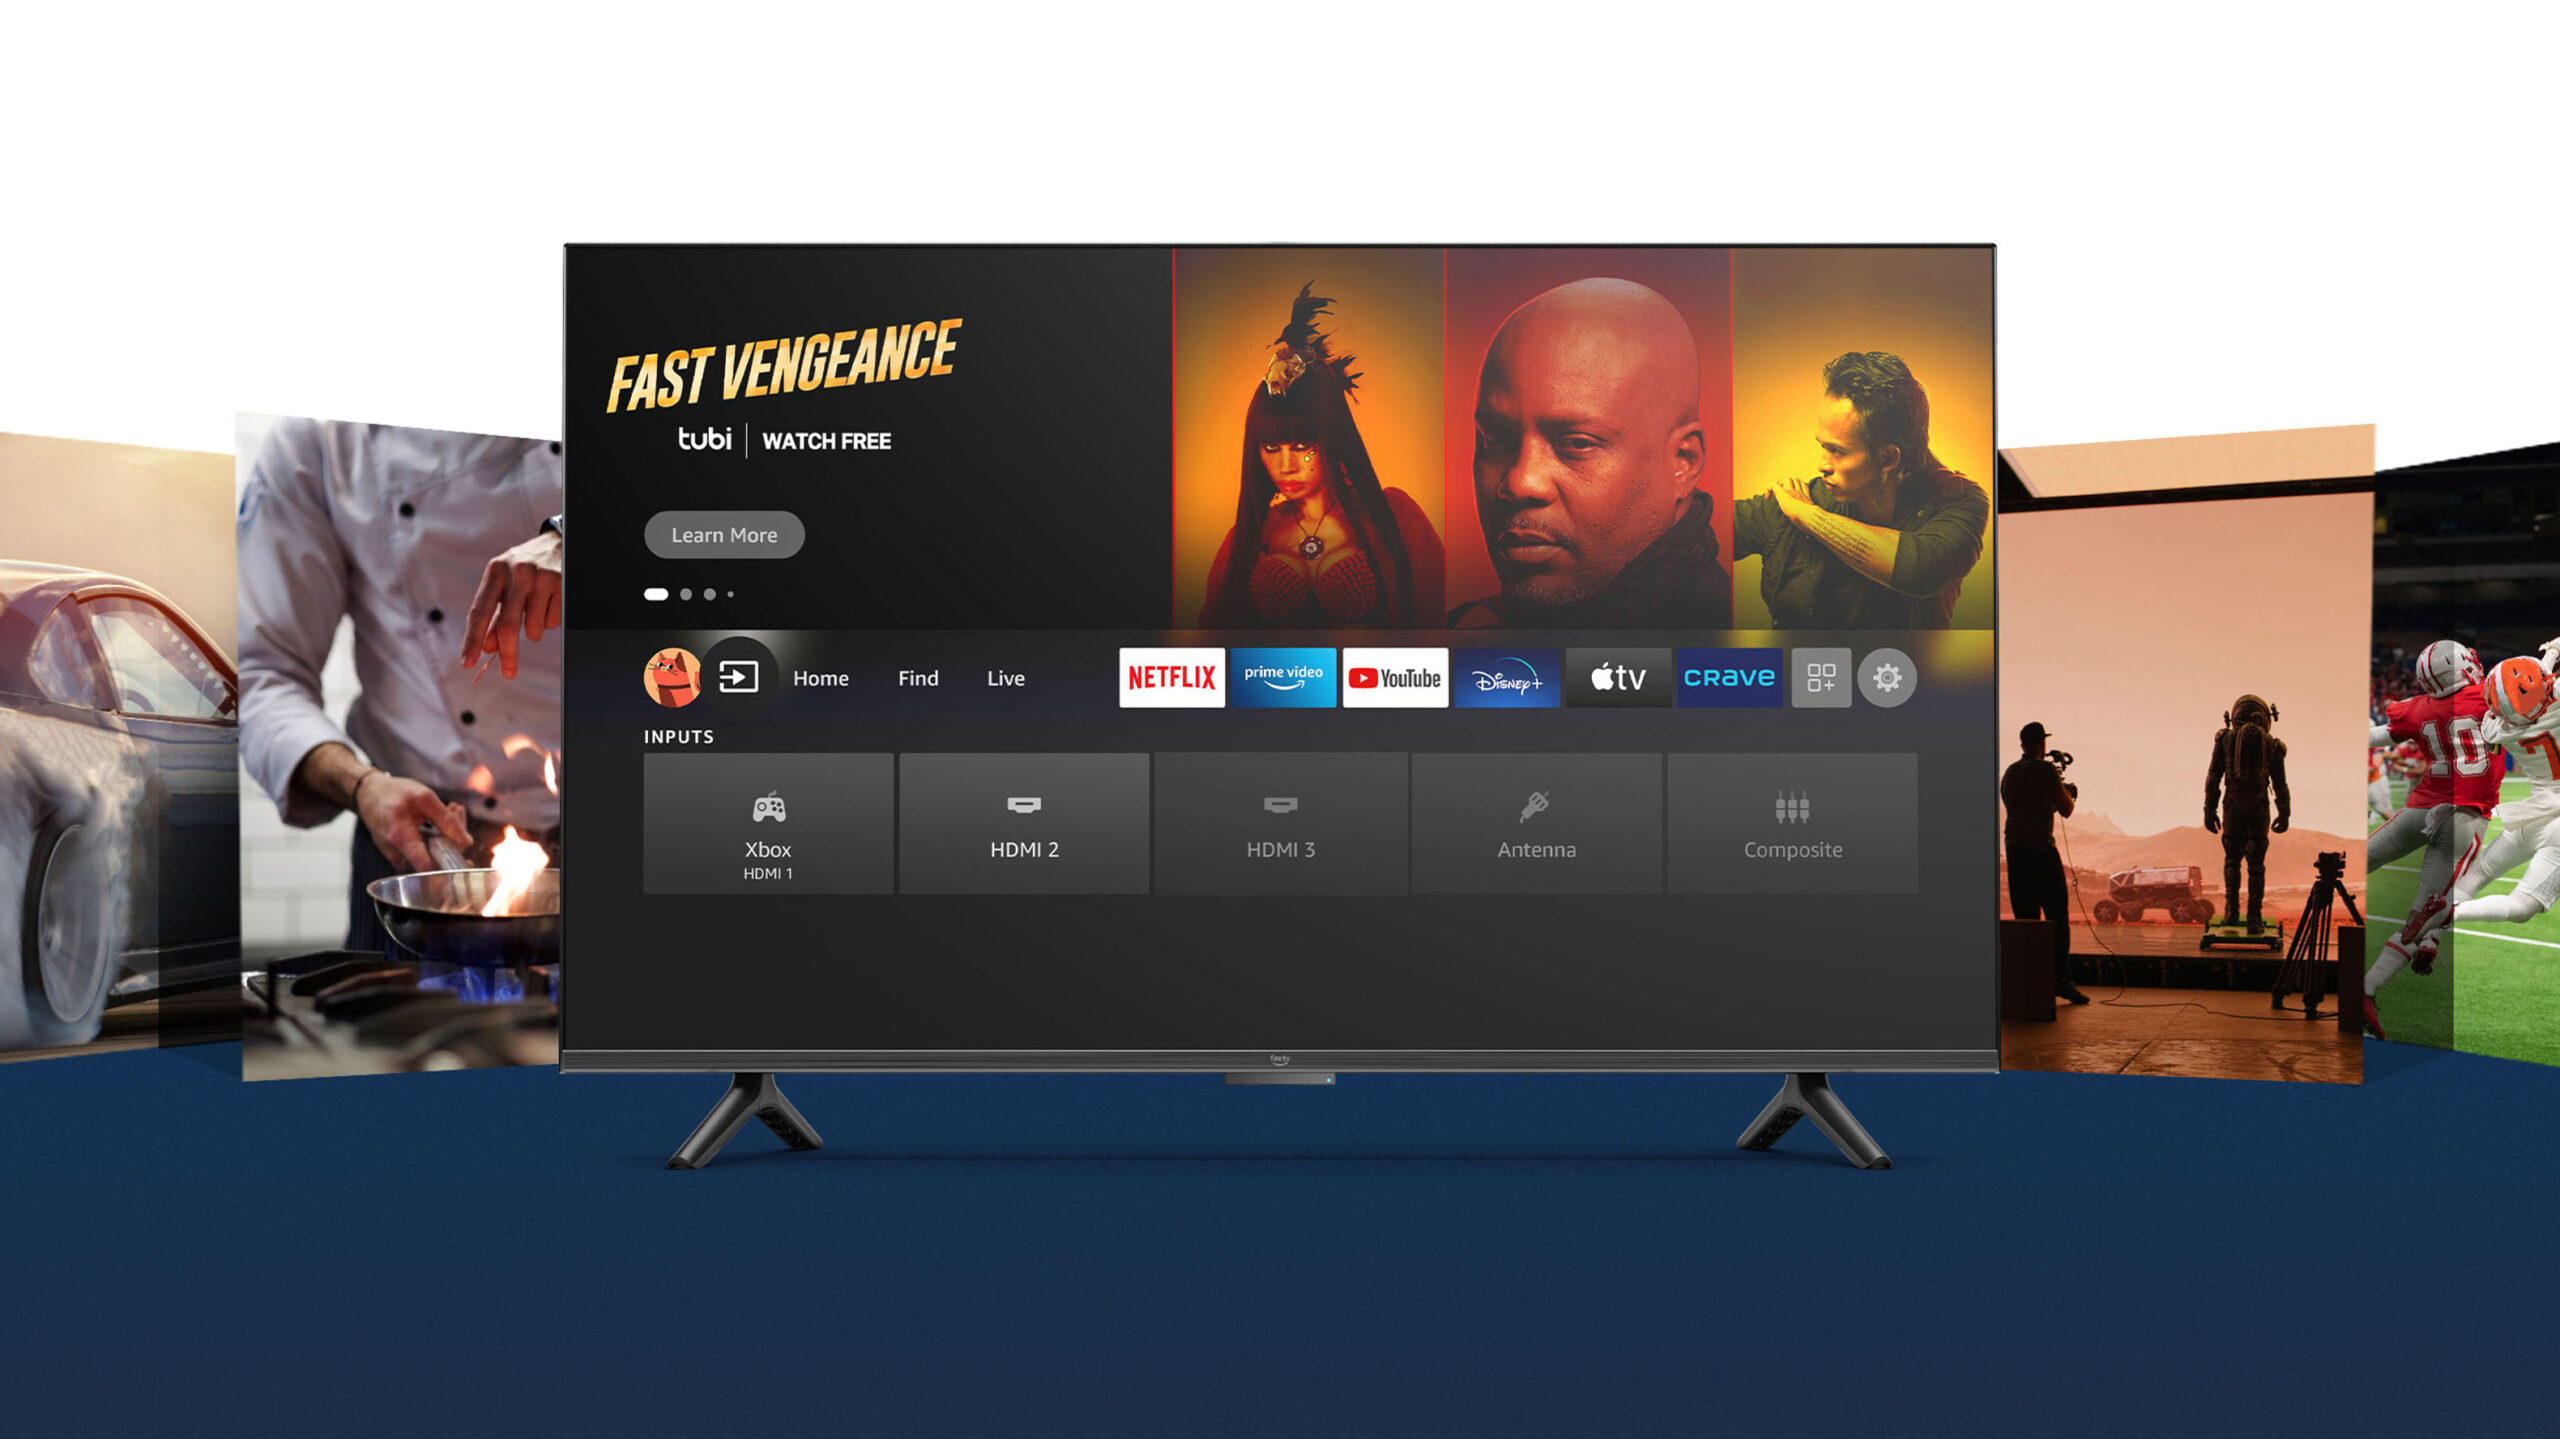 Amazon Fire TV Omni met een 4K 50-inch scherm kan gekocht worden met $200 korting